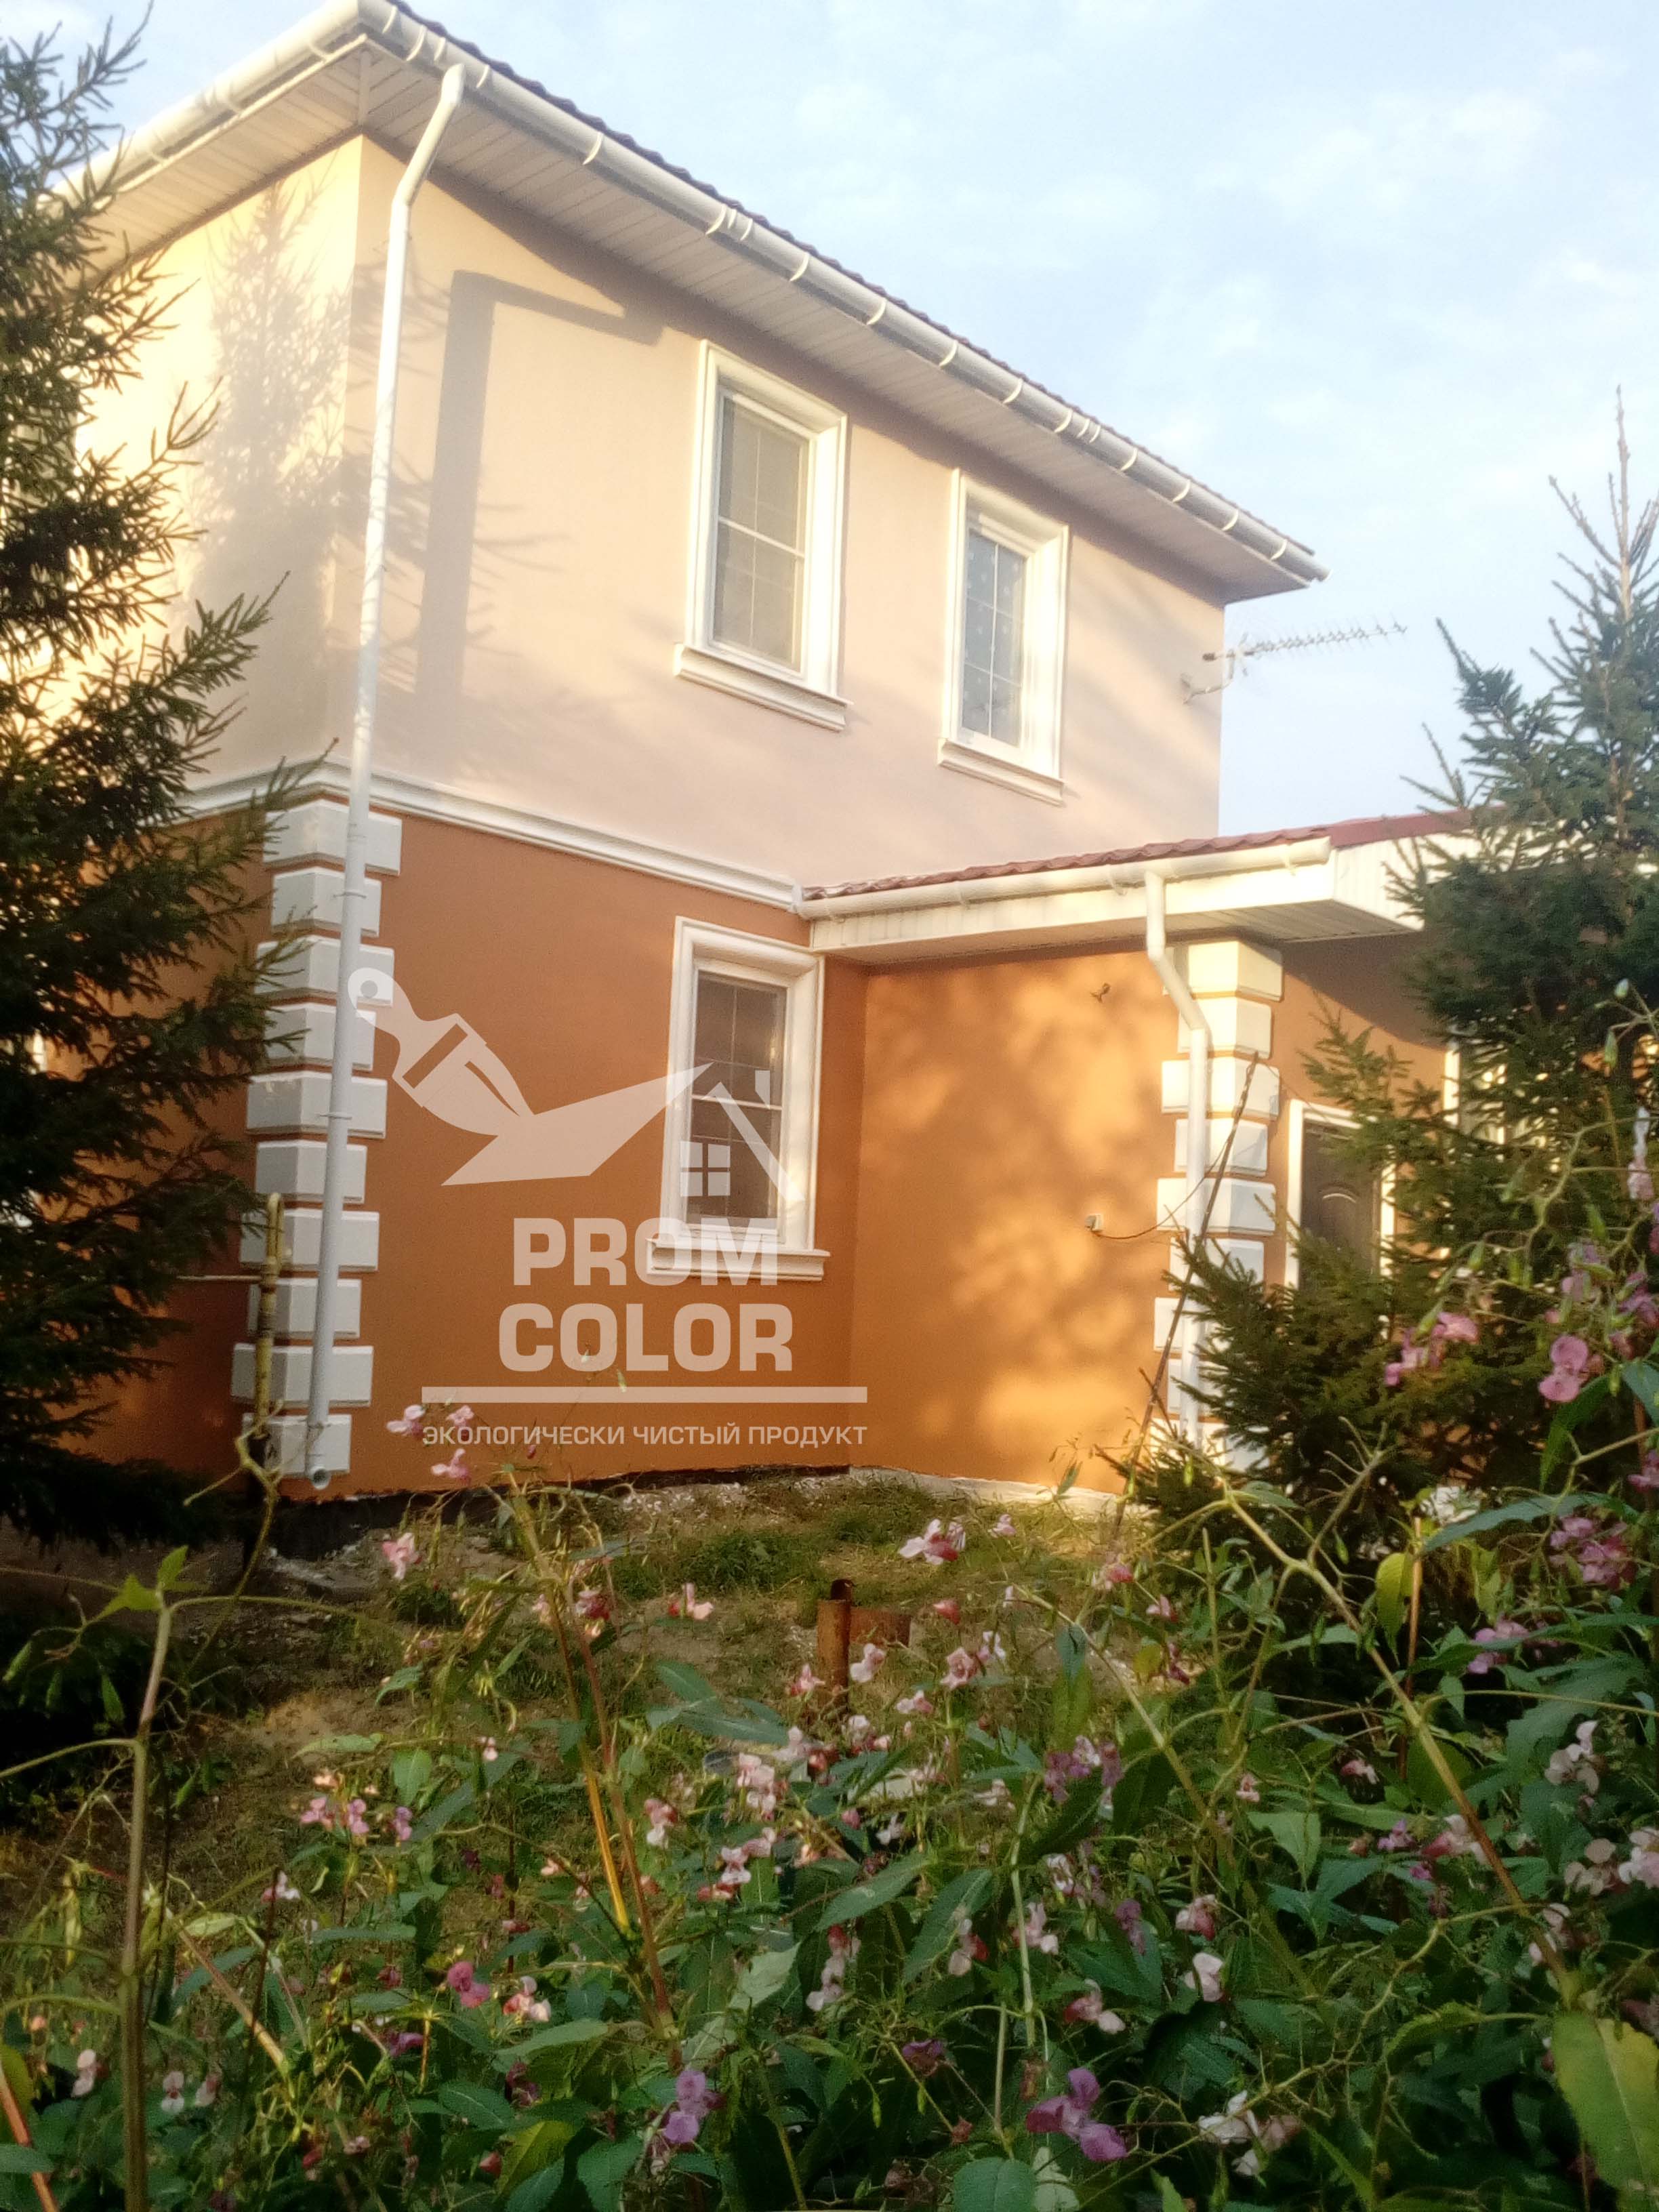 Фасад окрашен краской резиновой цвет Капучино и цвет под заказ, пос. Солотча Рязанская область